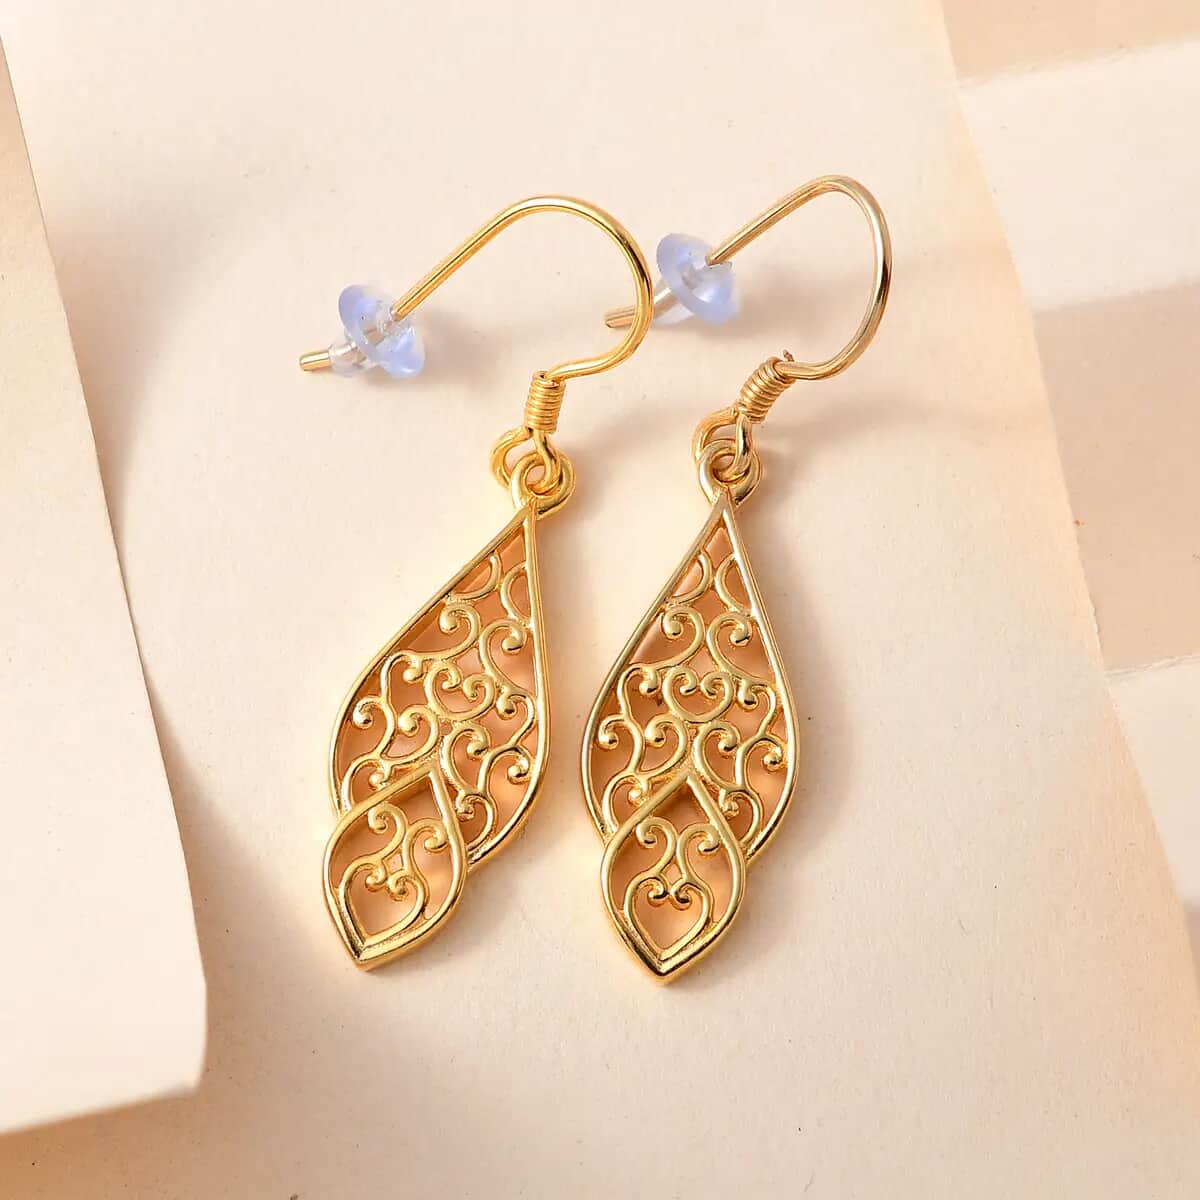 Openwork Dangle Earrings In 14K Yellow Gold Plated Sterling Silver, Silver  Drop Earrings For Women